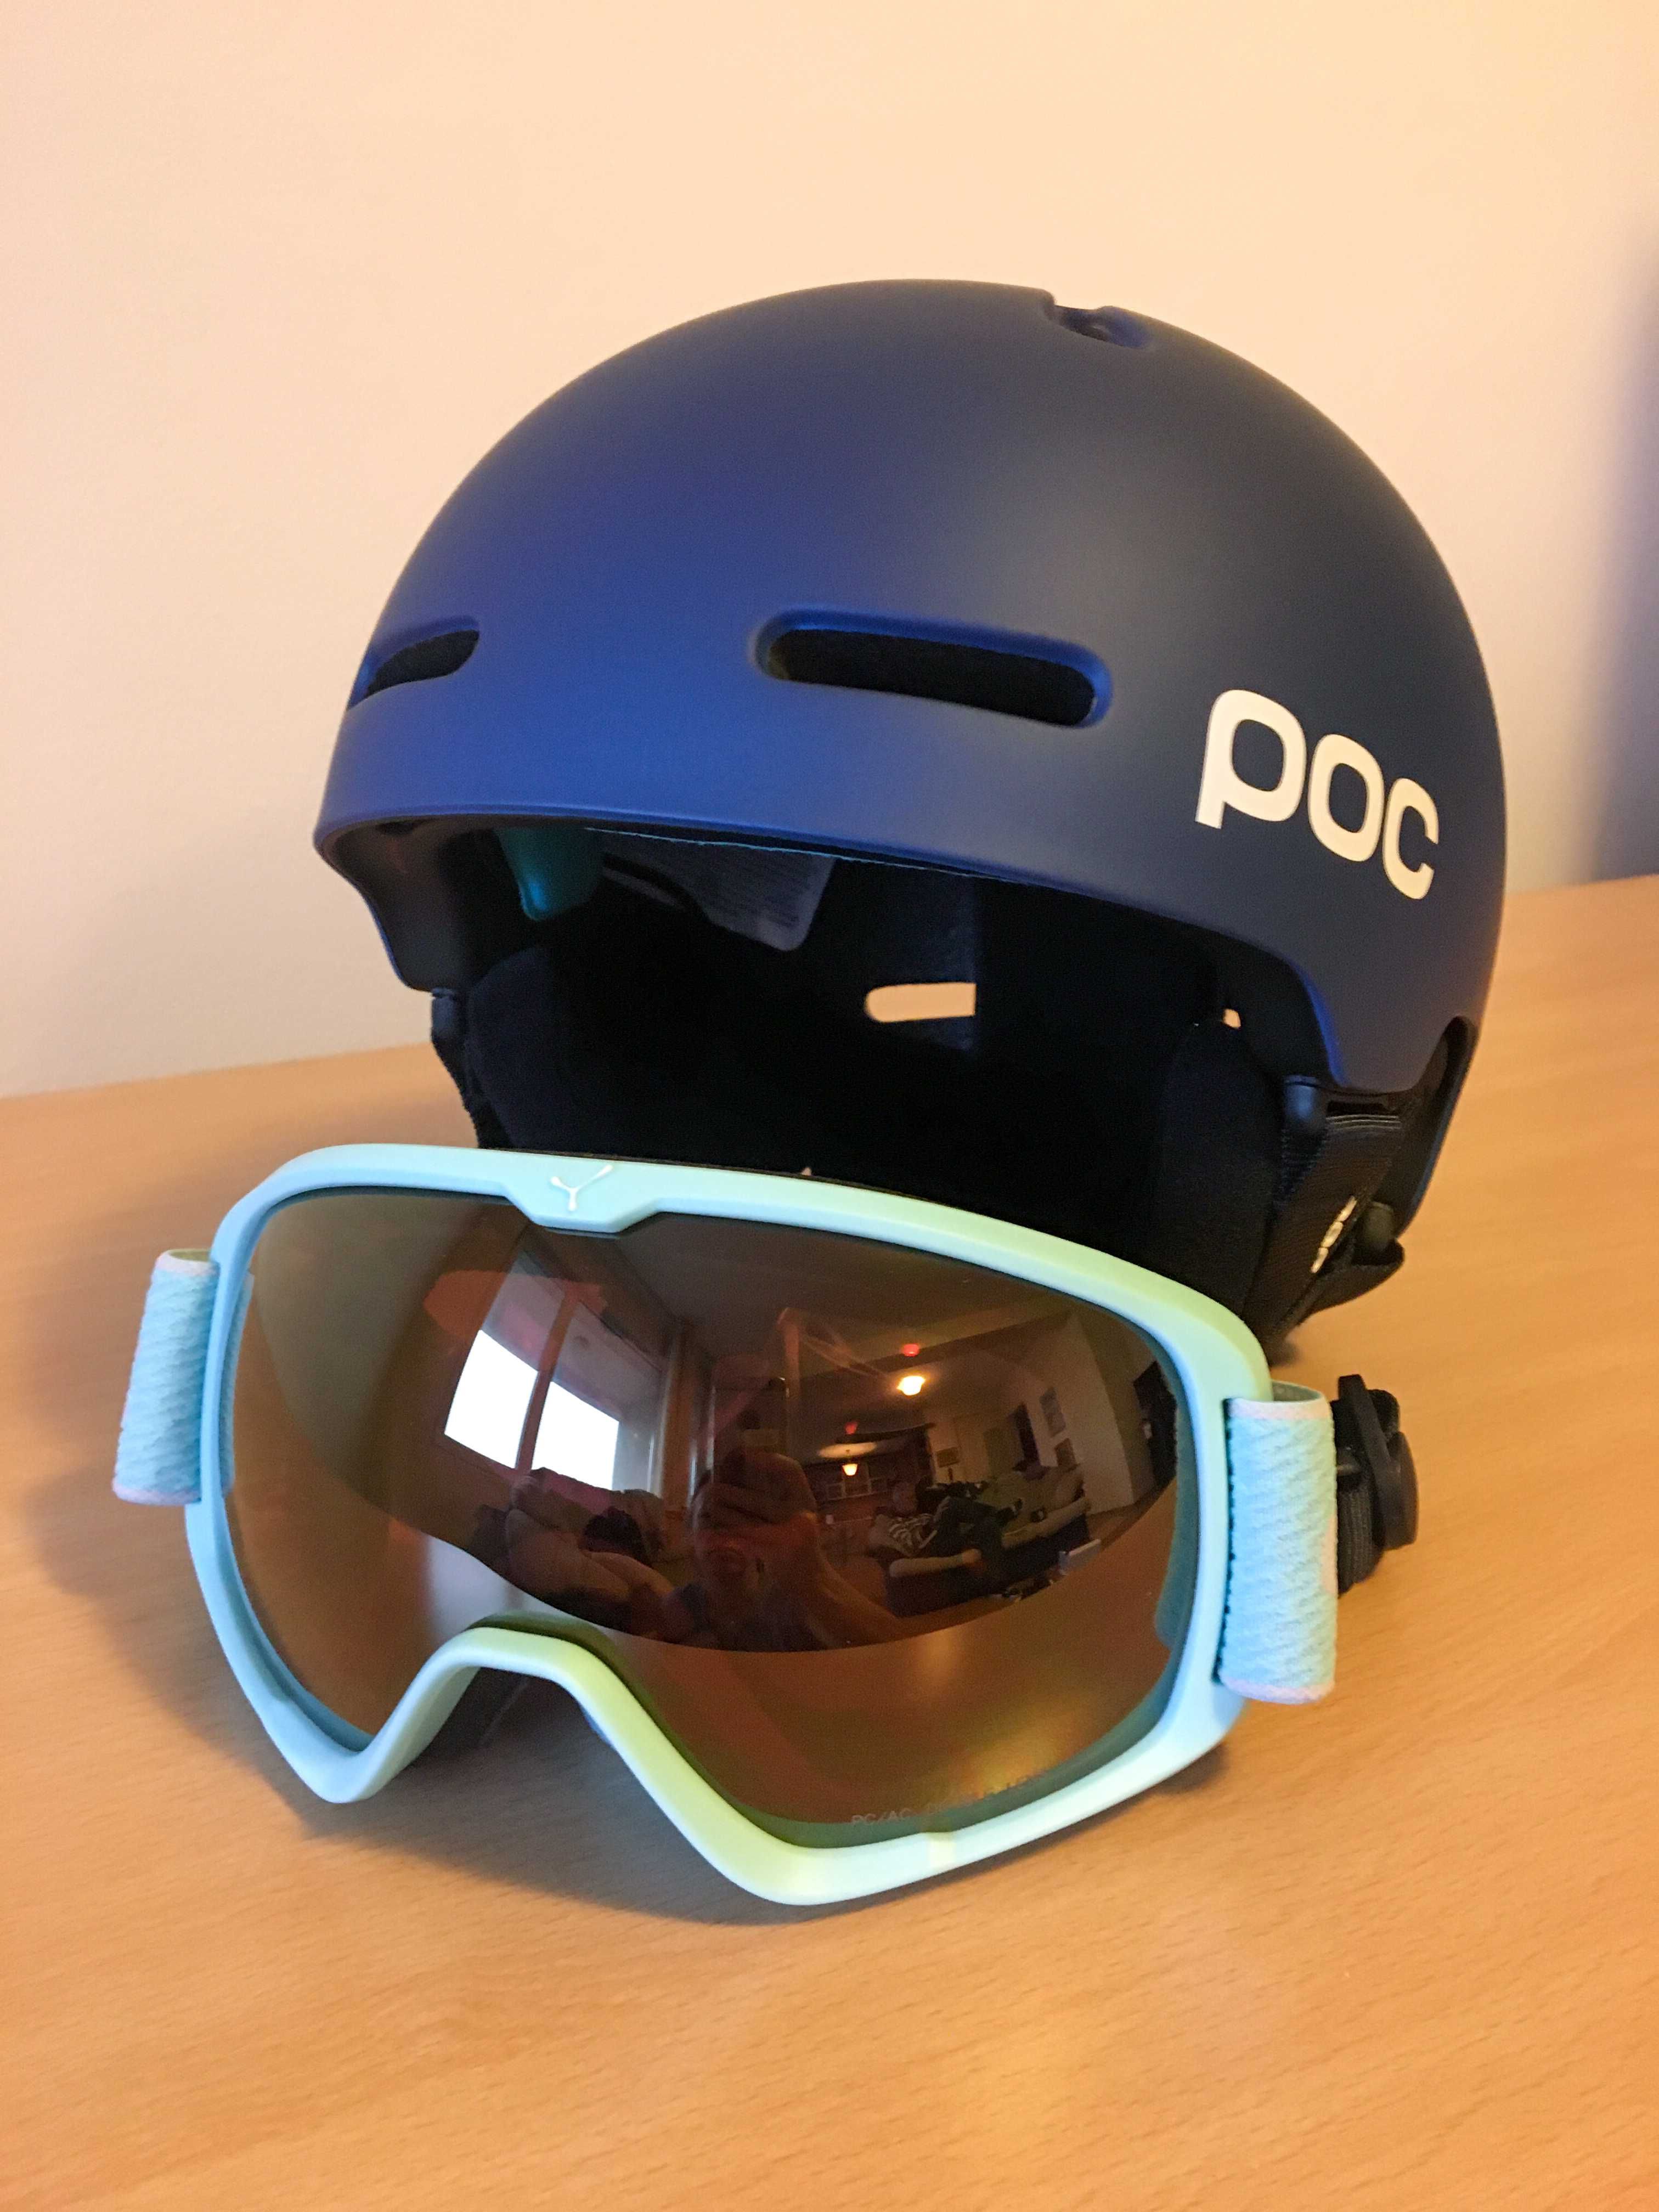 нови ски/снoуборд каска Poc Obex Spin, Poc Fronix Spin, ски маски Cebe